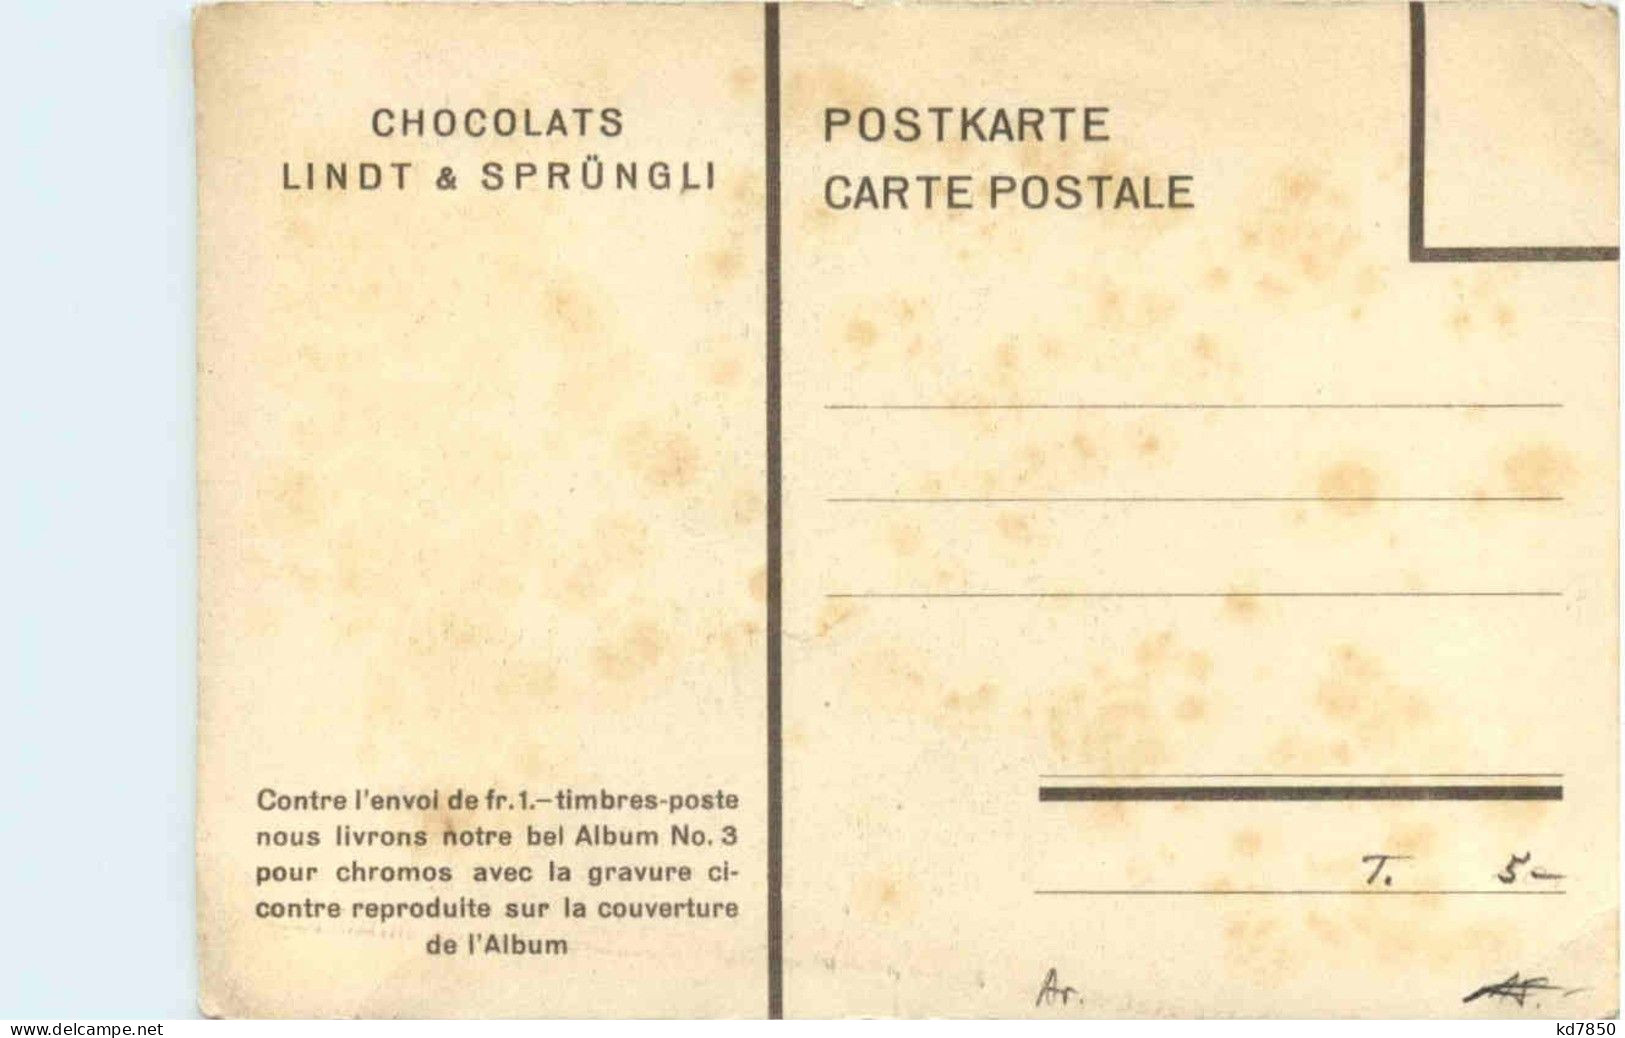 Chocolats Lindt & Sprüngli - Publicidad